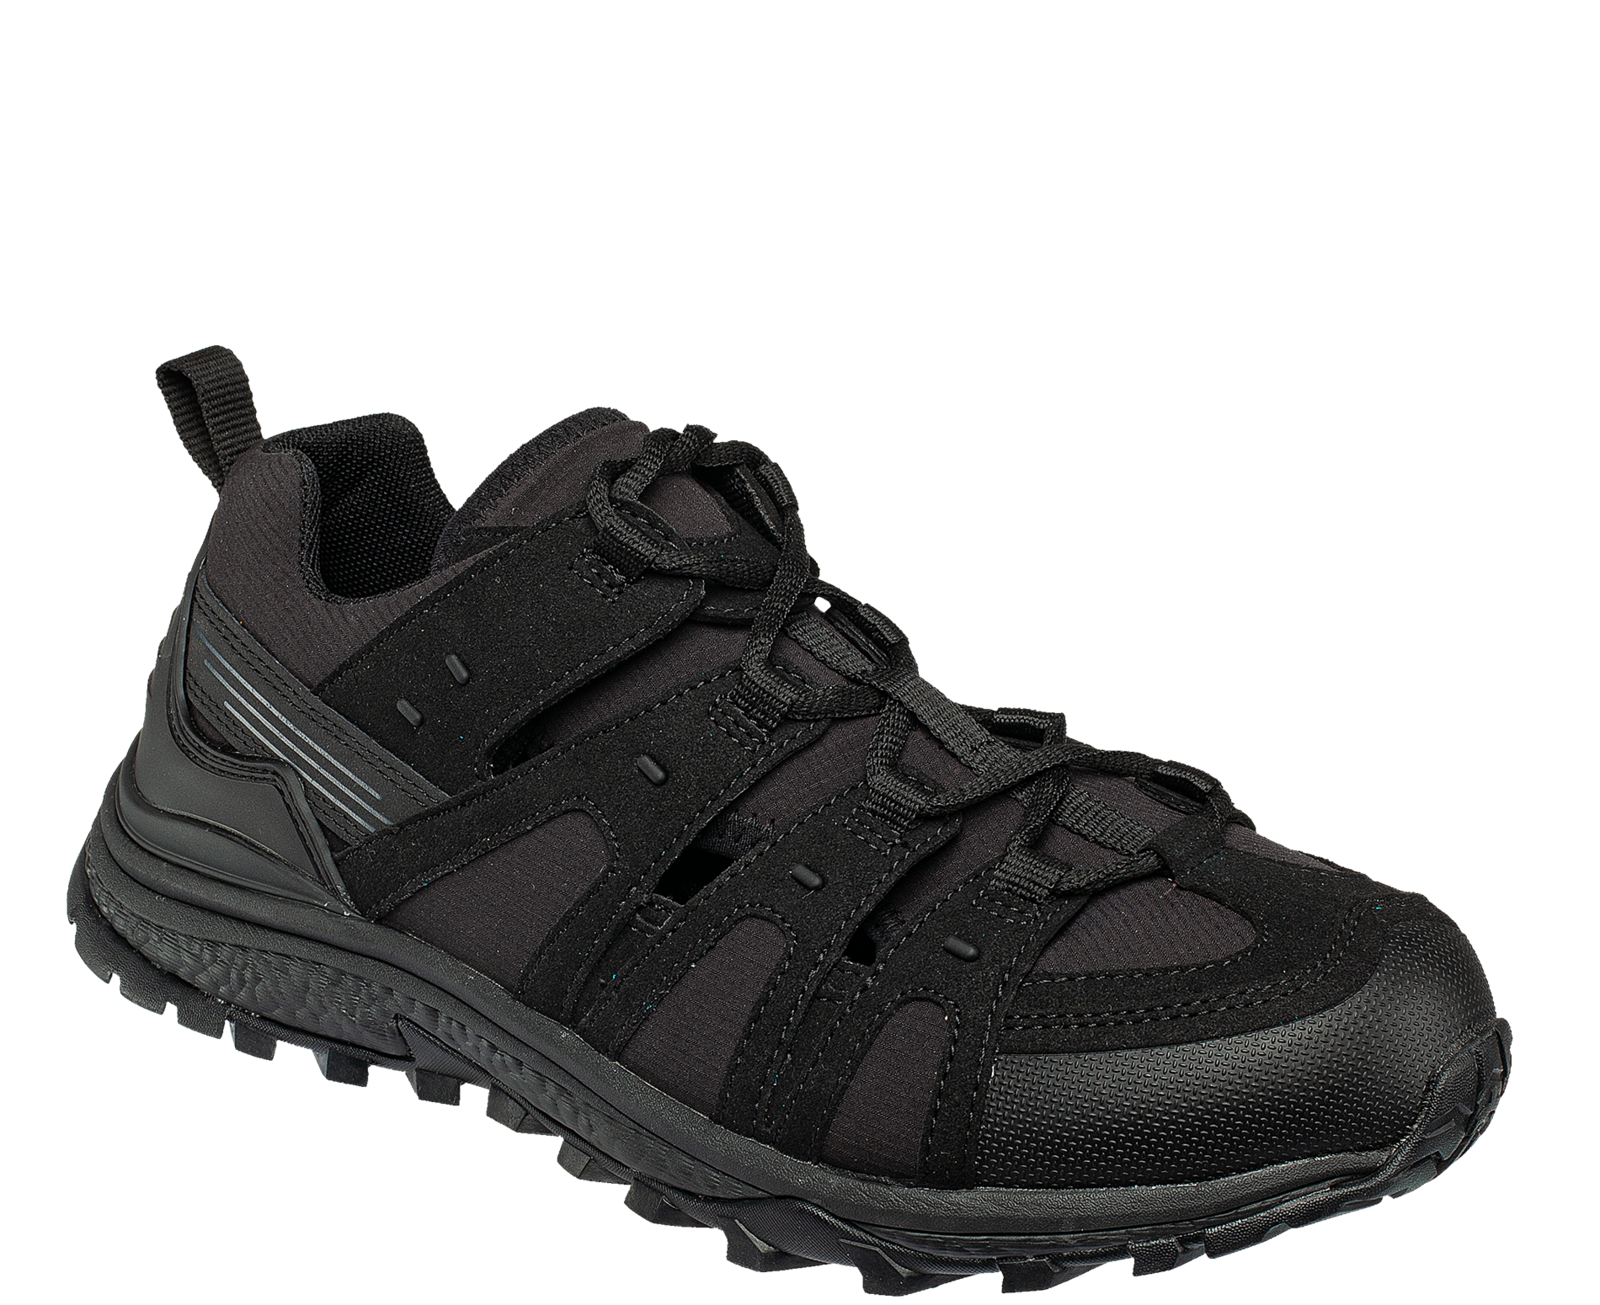 Pracovné sandále Bennon Amigo O1 čierne - veľkosť: 44, farba: čierna